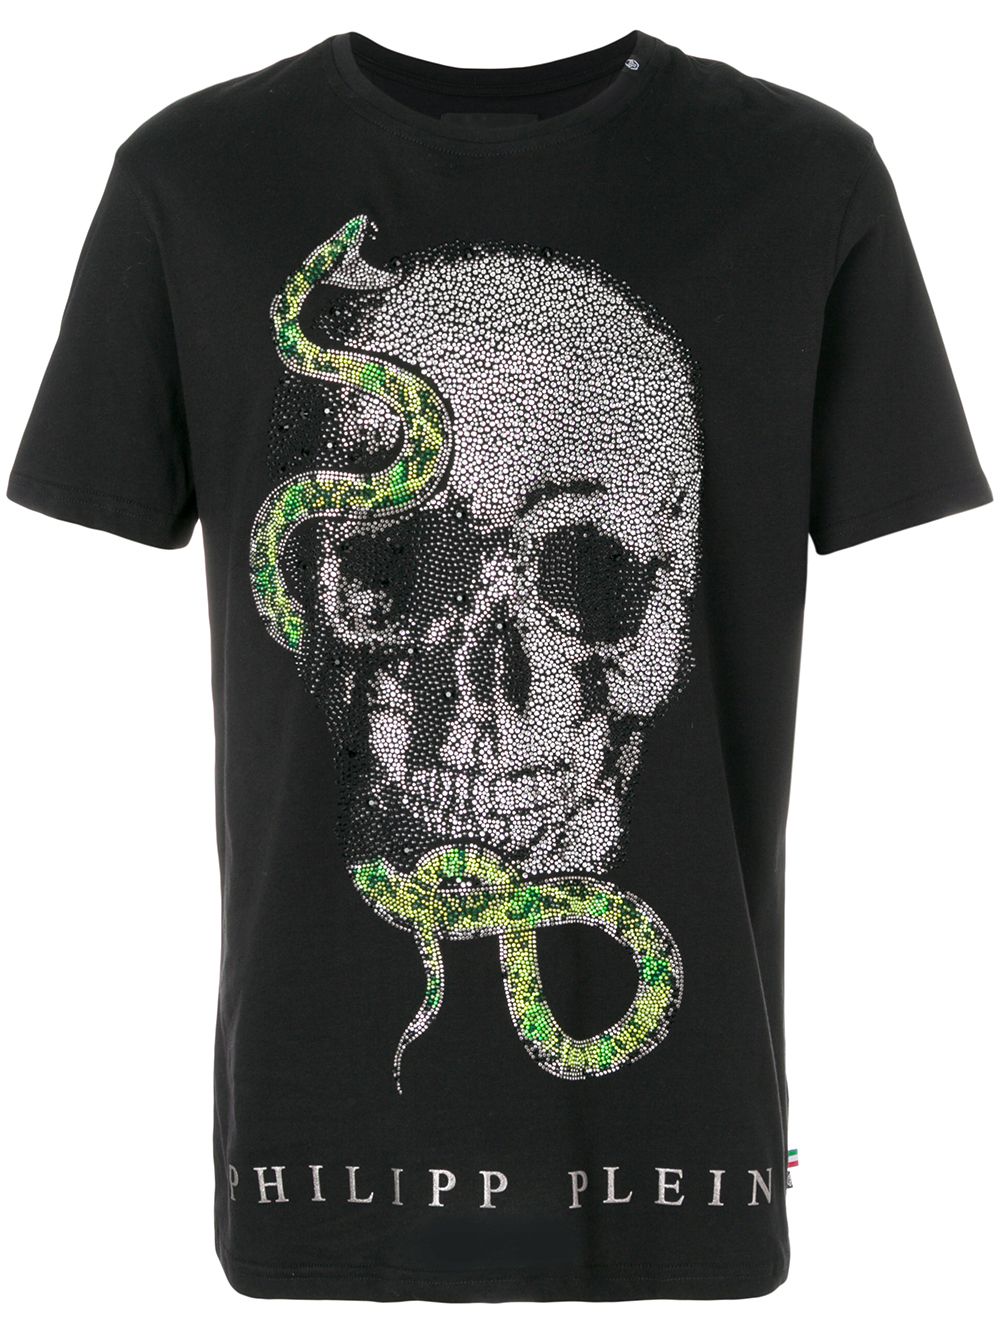 philipp plein t shirt skull snake